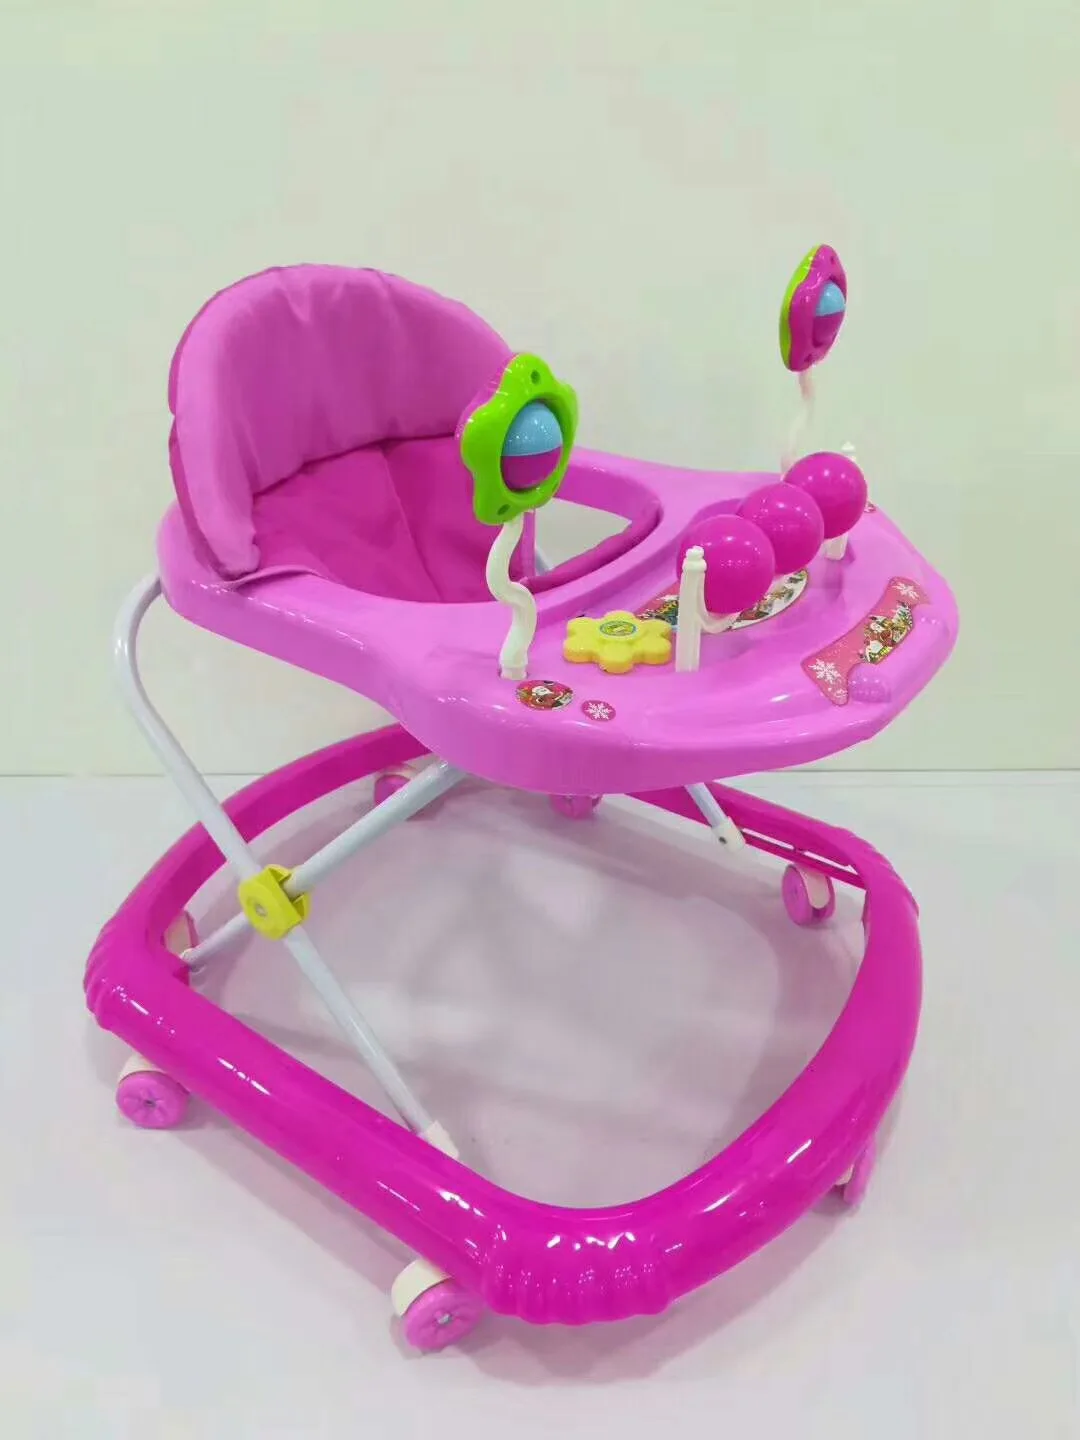 baby walkers online sale